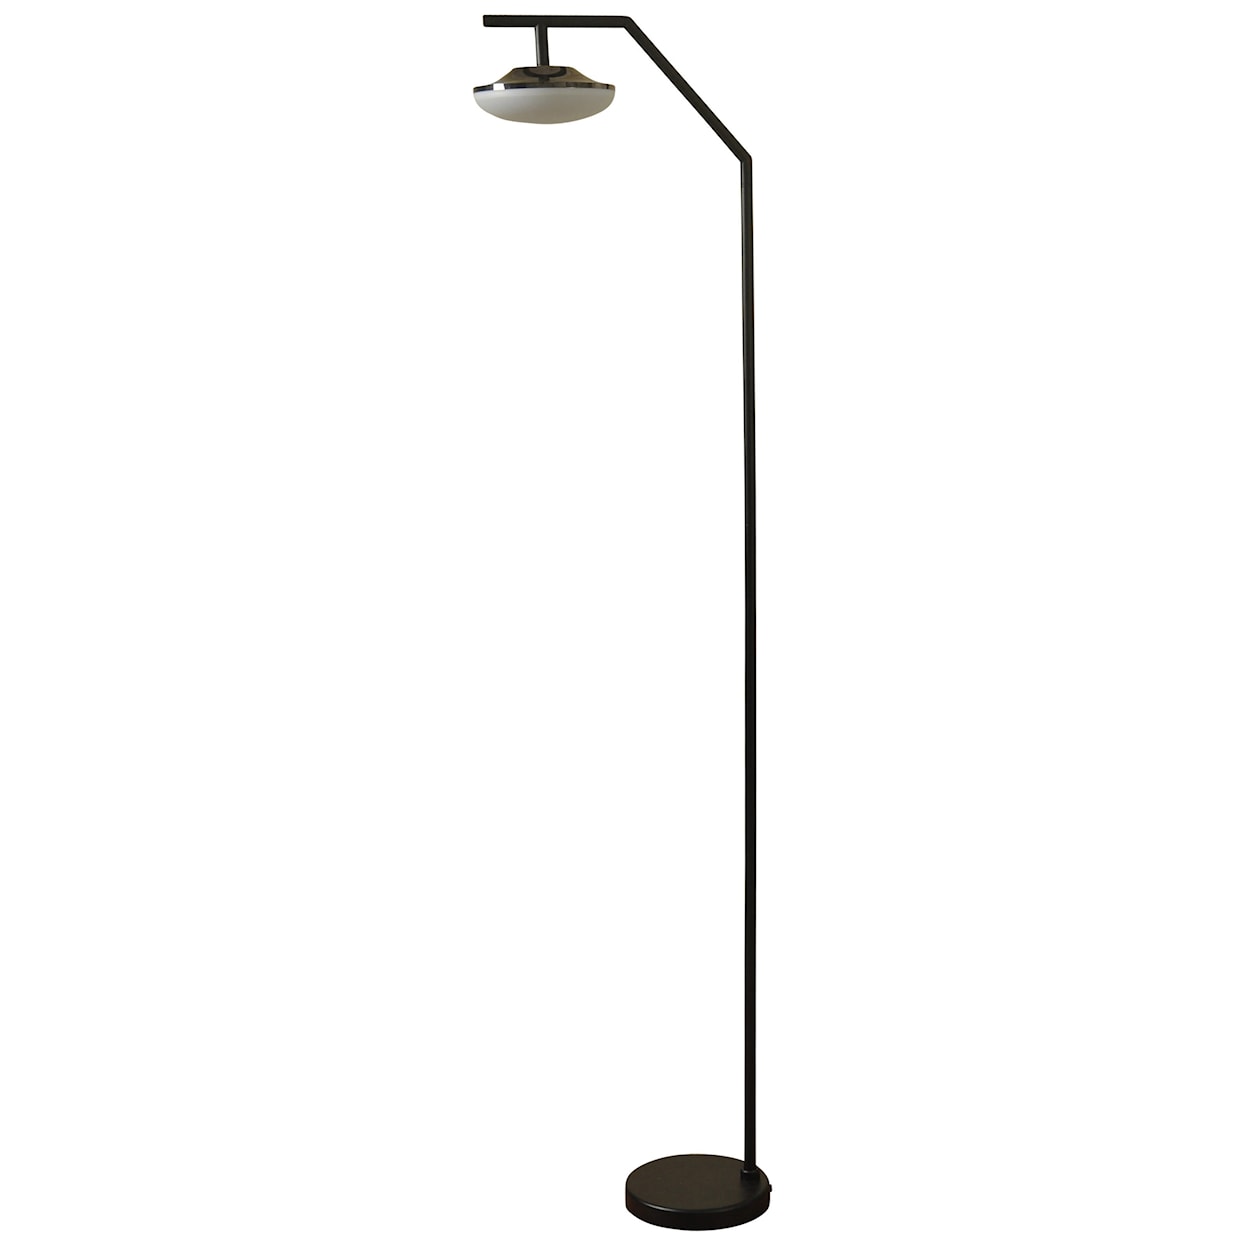 StyleCraft Lamps Steel Floor Lamp